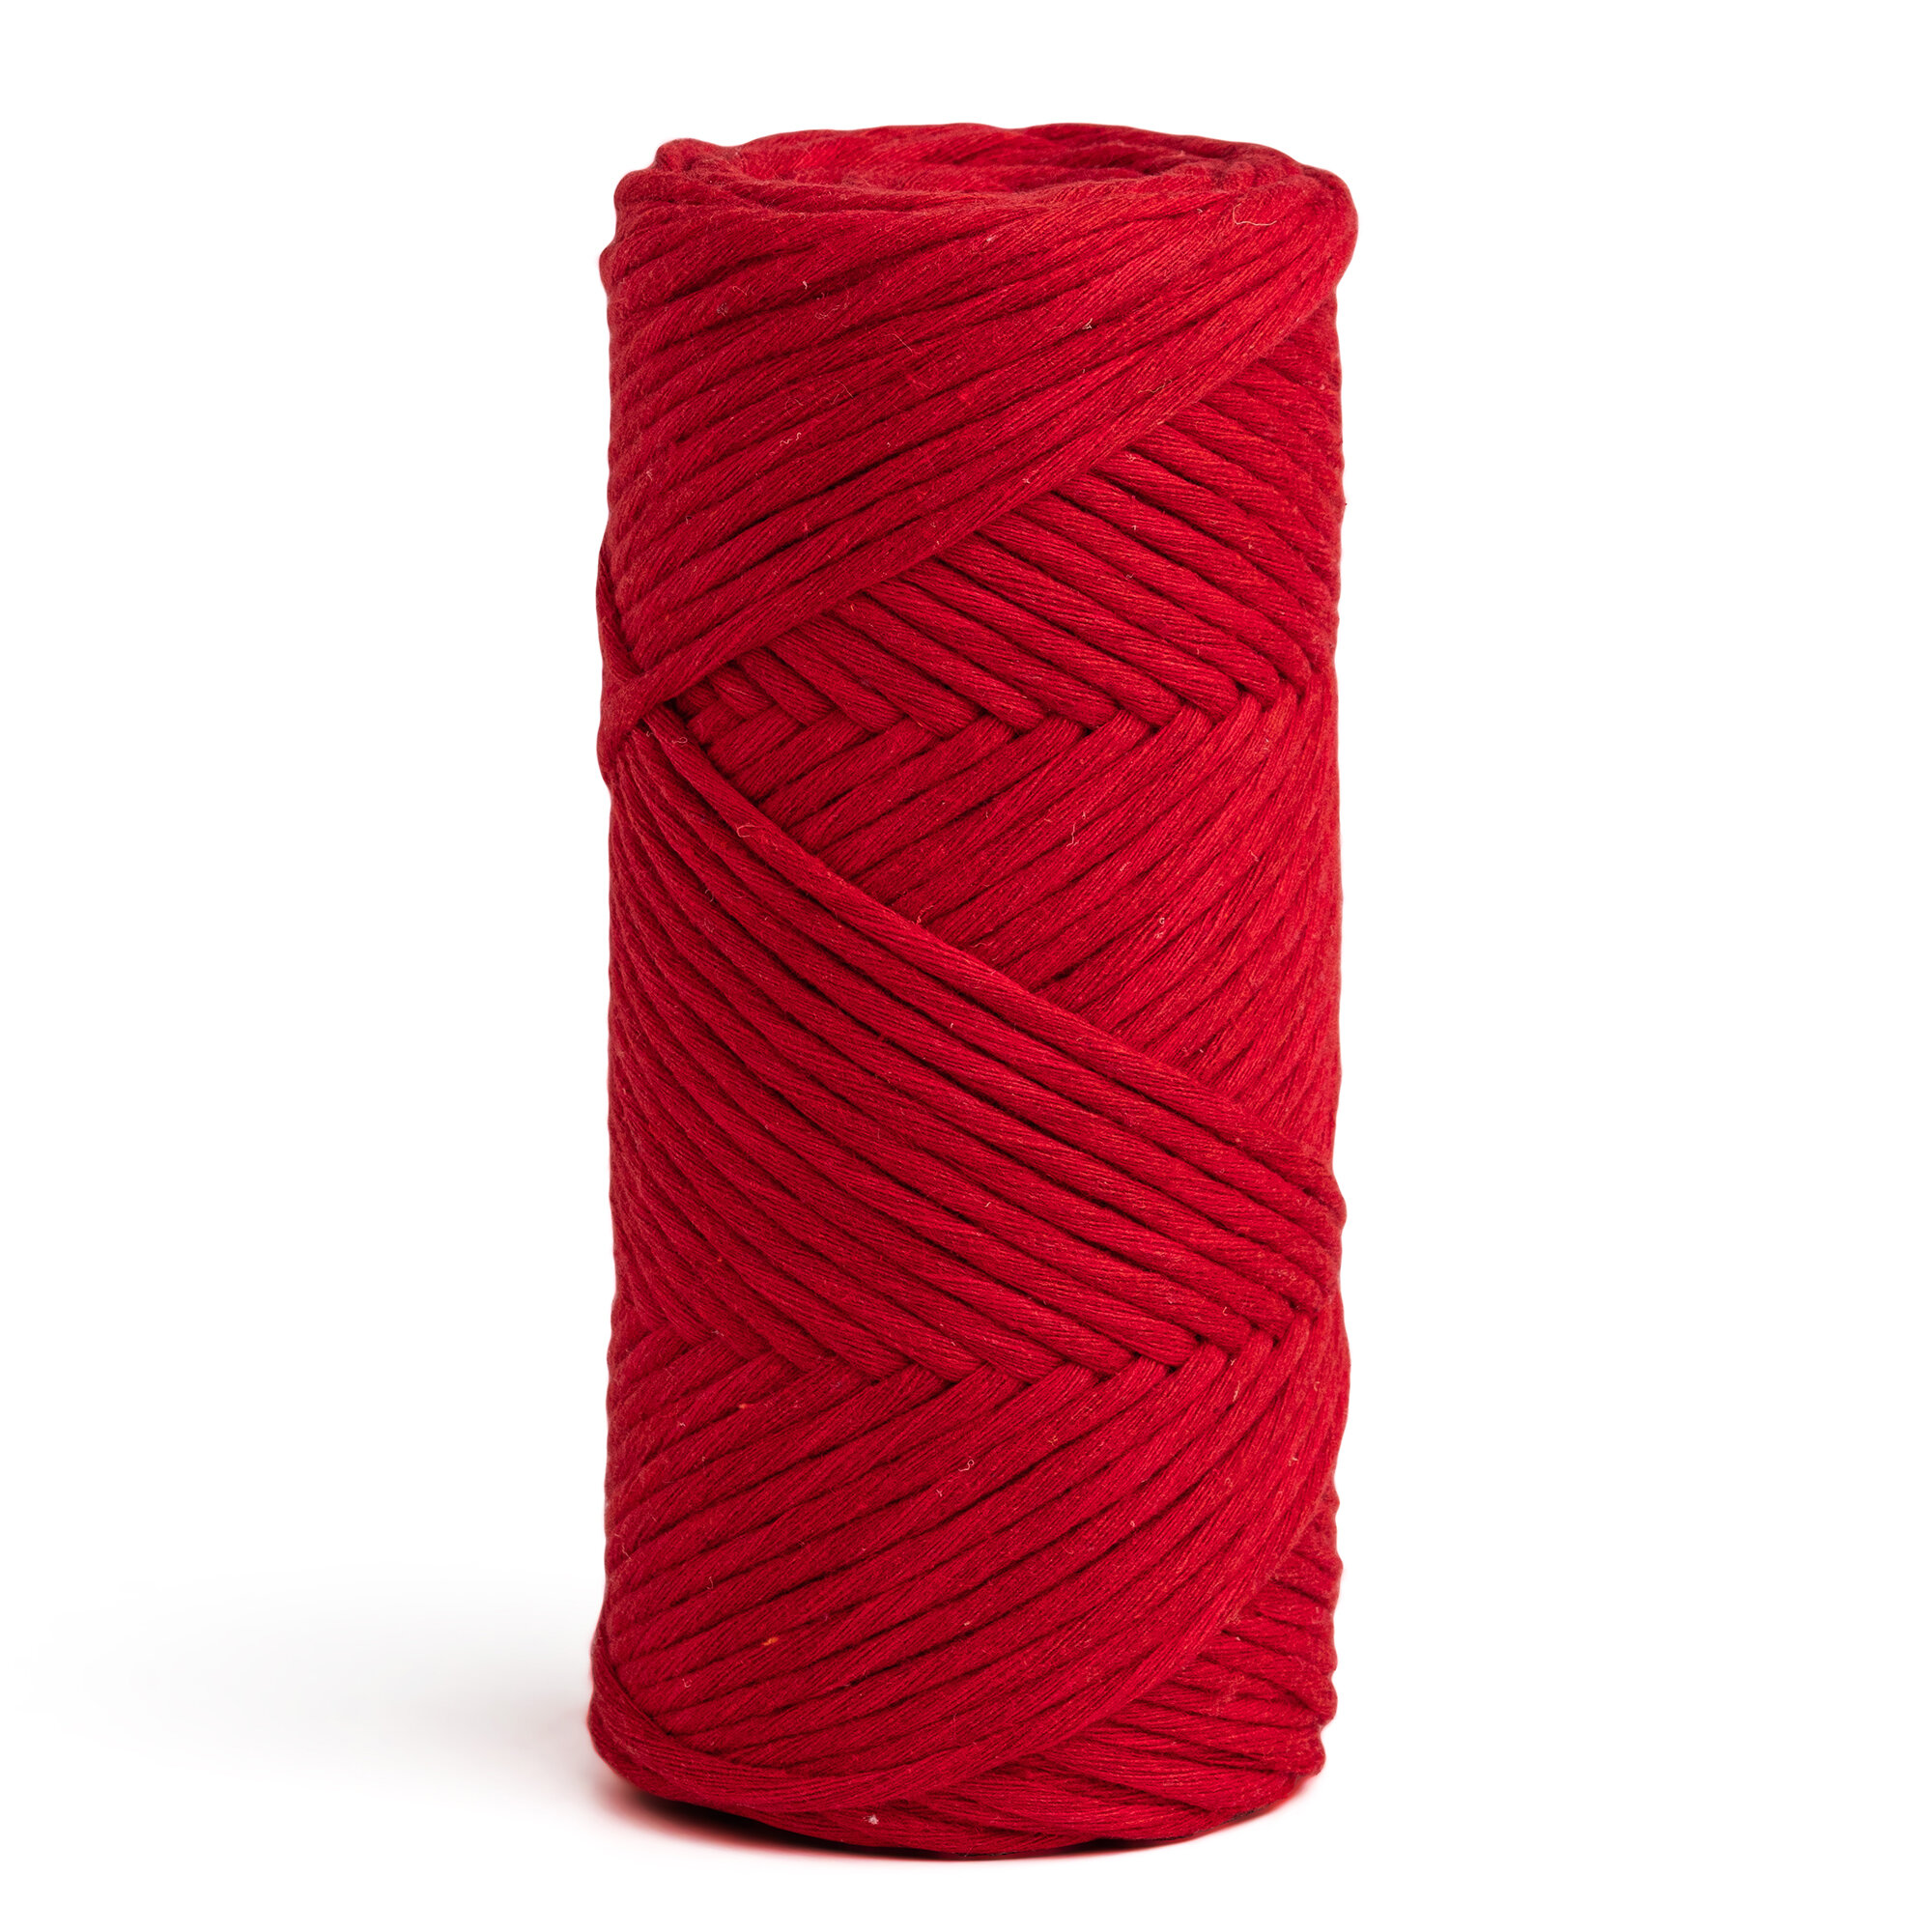 Шпагат хлопковый красный 3 мм 100 м для макраме, вязания, рукоделия